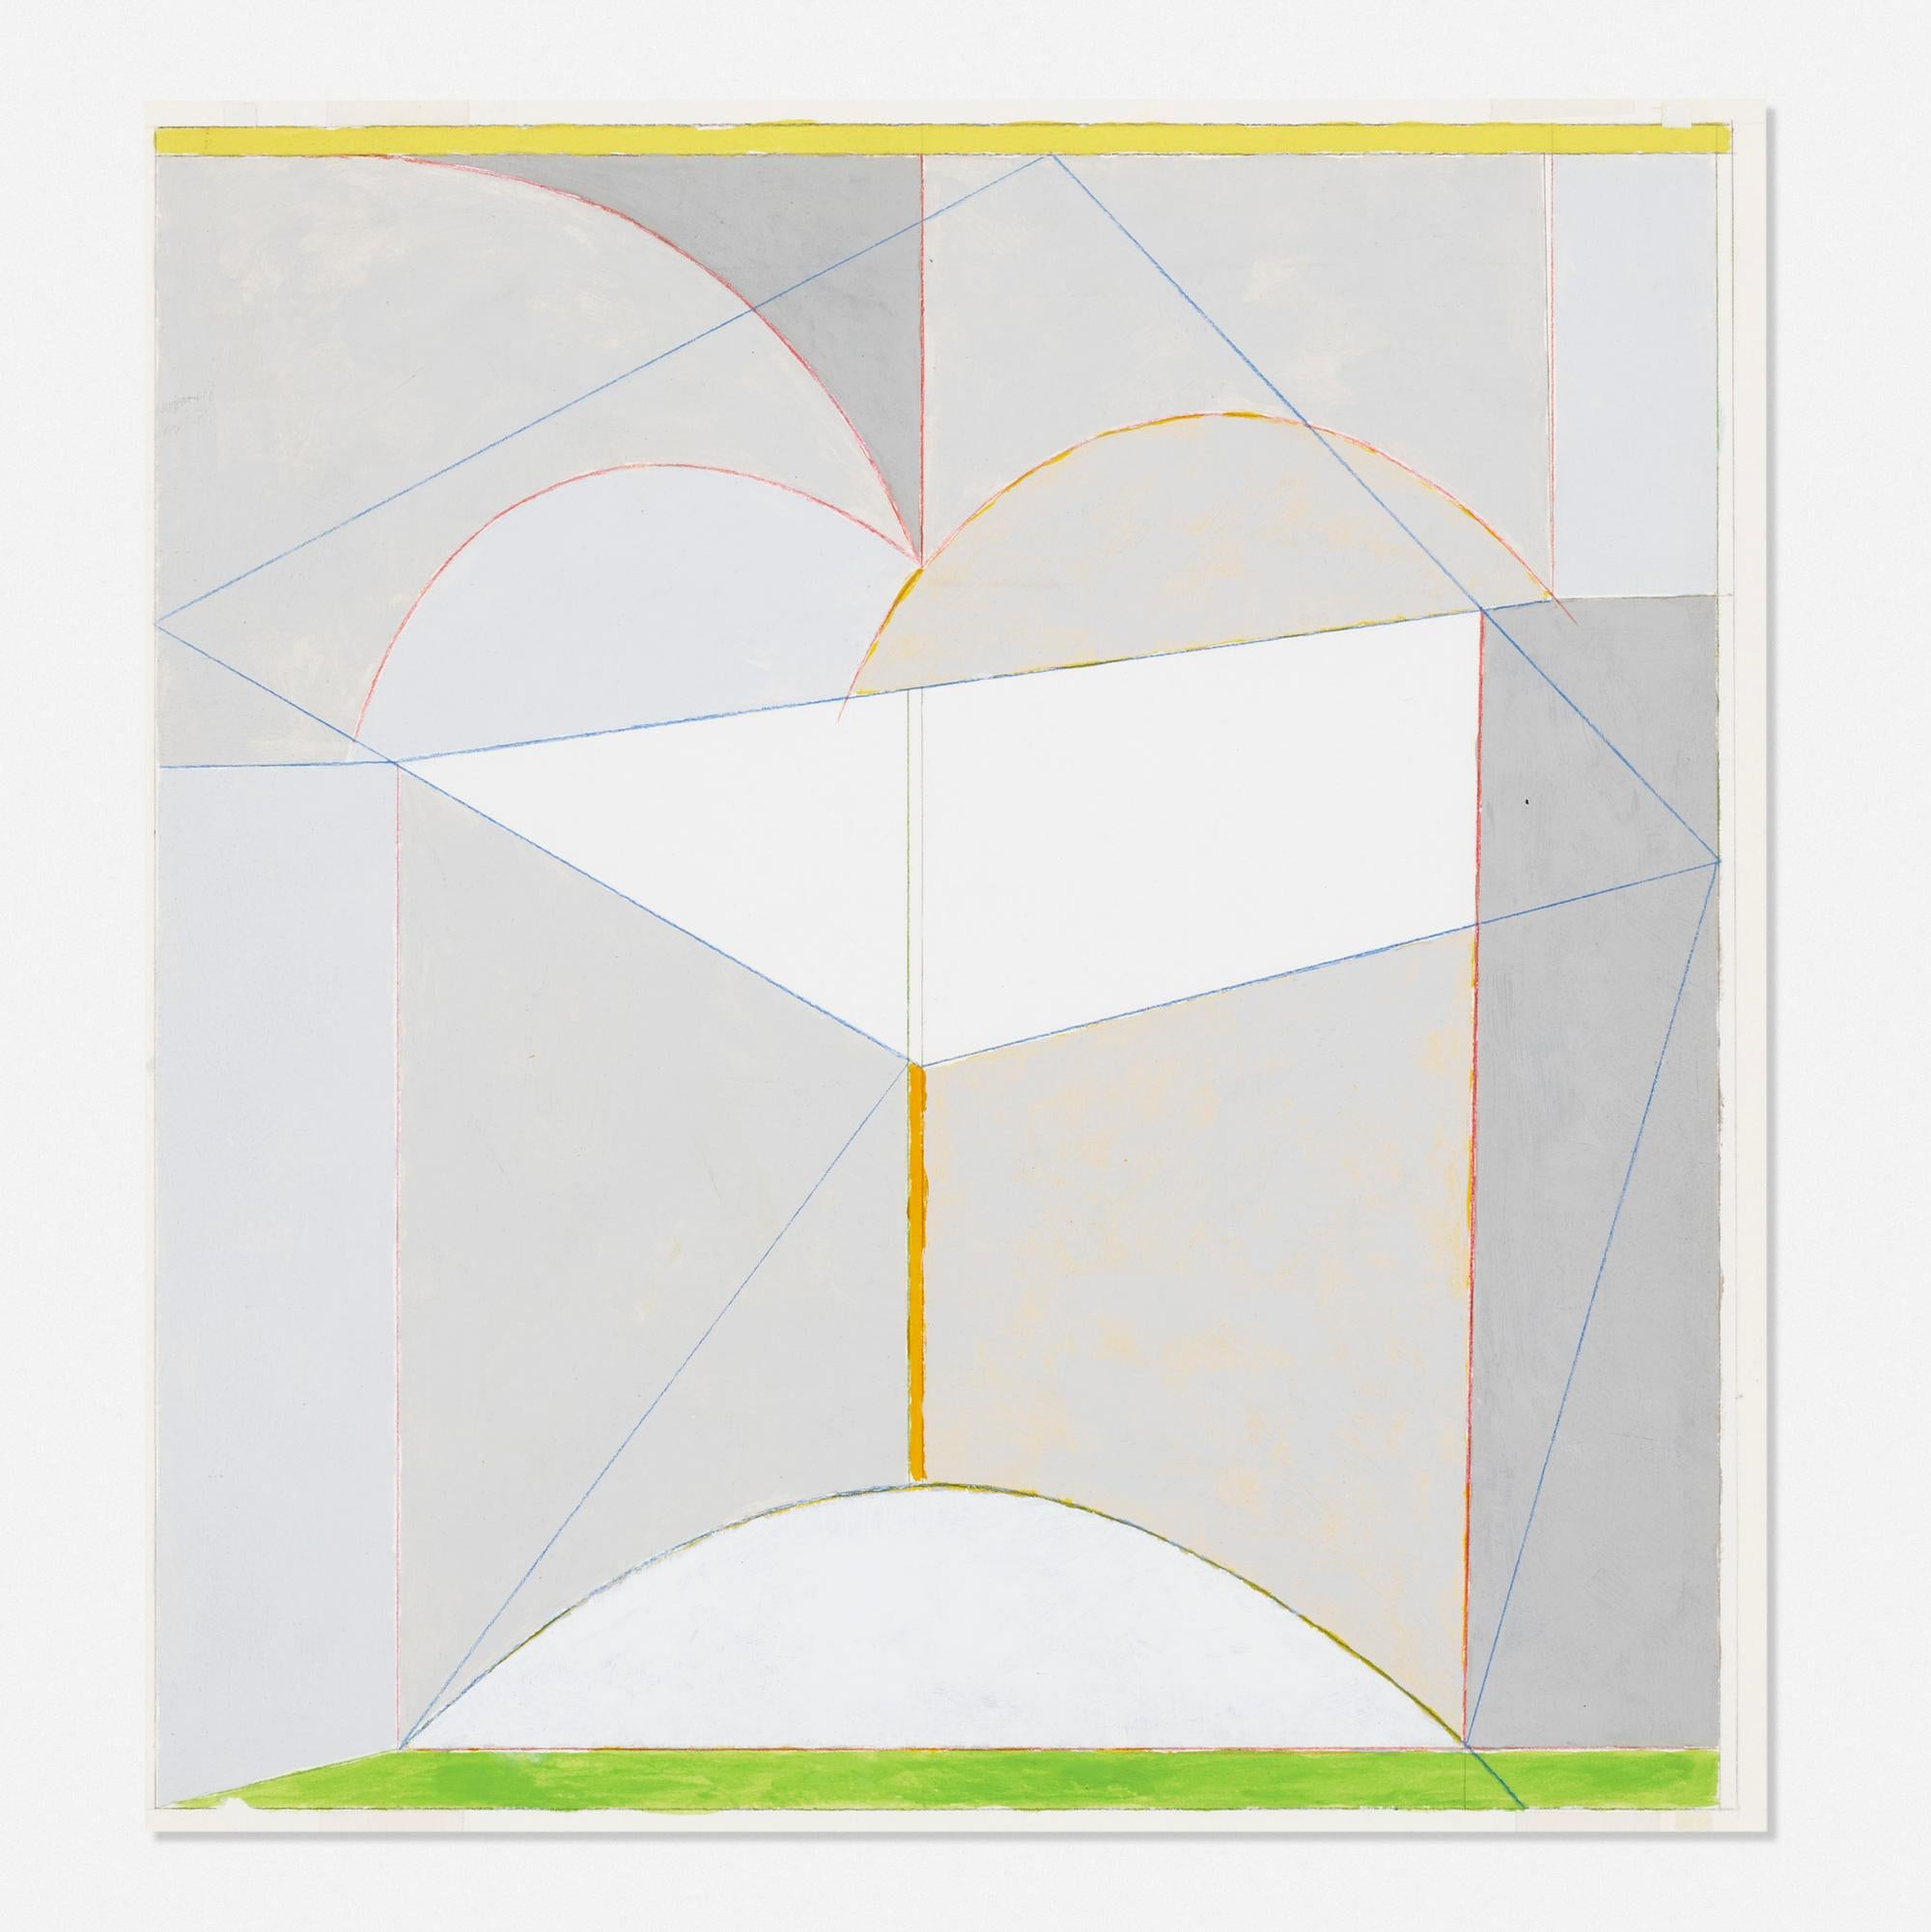 James Rosati
Geometrische Abstraktion ohne Titel, 1982
Beidseitige Zeichnung aus Acryl und Farbstift auf Papier
Handsigniert und datiert unten rechts auf der Vorderseite
14 1/2 × 13 1/2 Zoll
Dies ist ein einzigartiges Werk 
Ungerahmt
Dieses